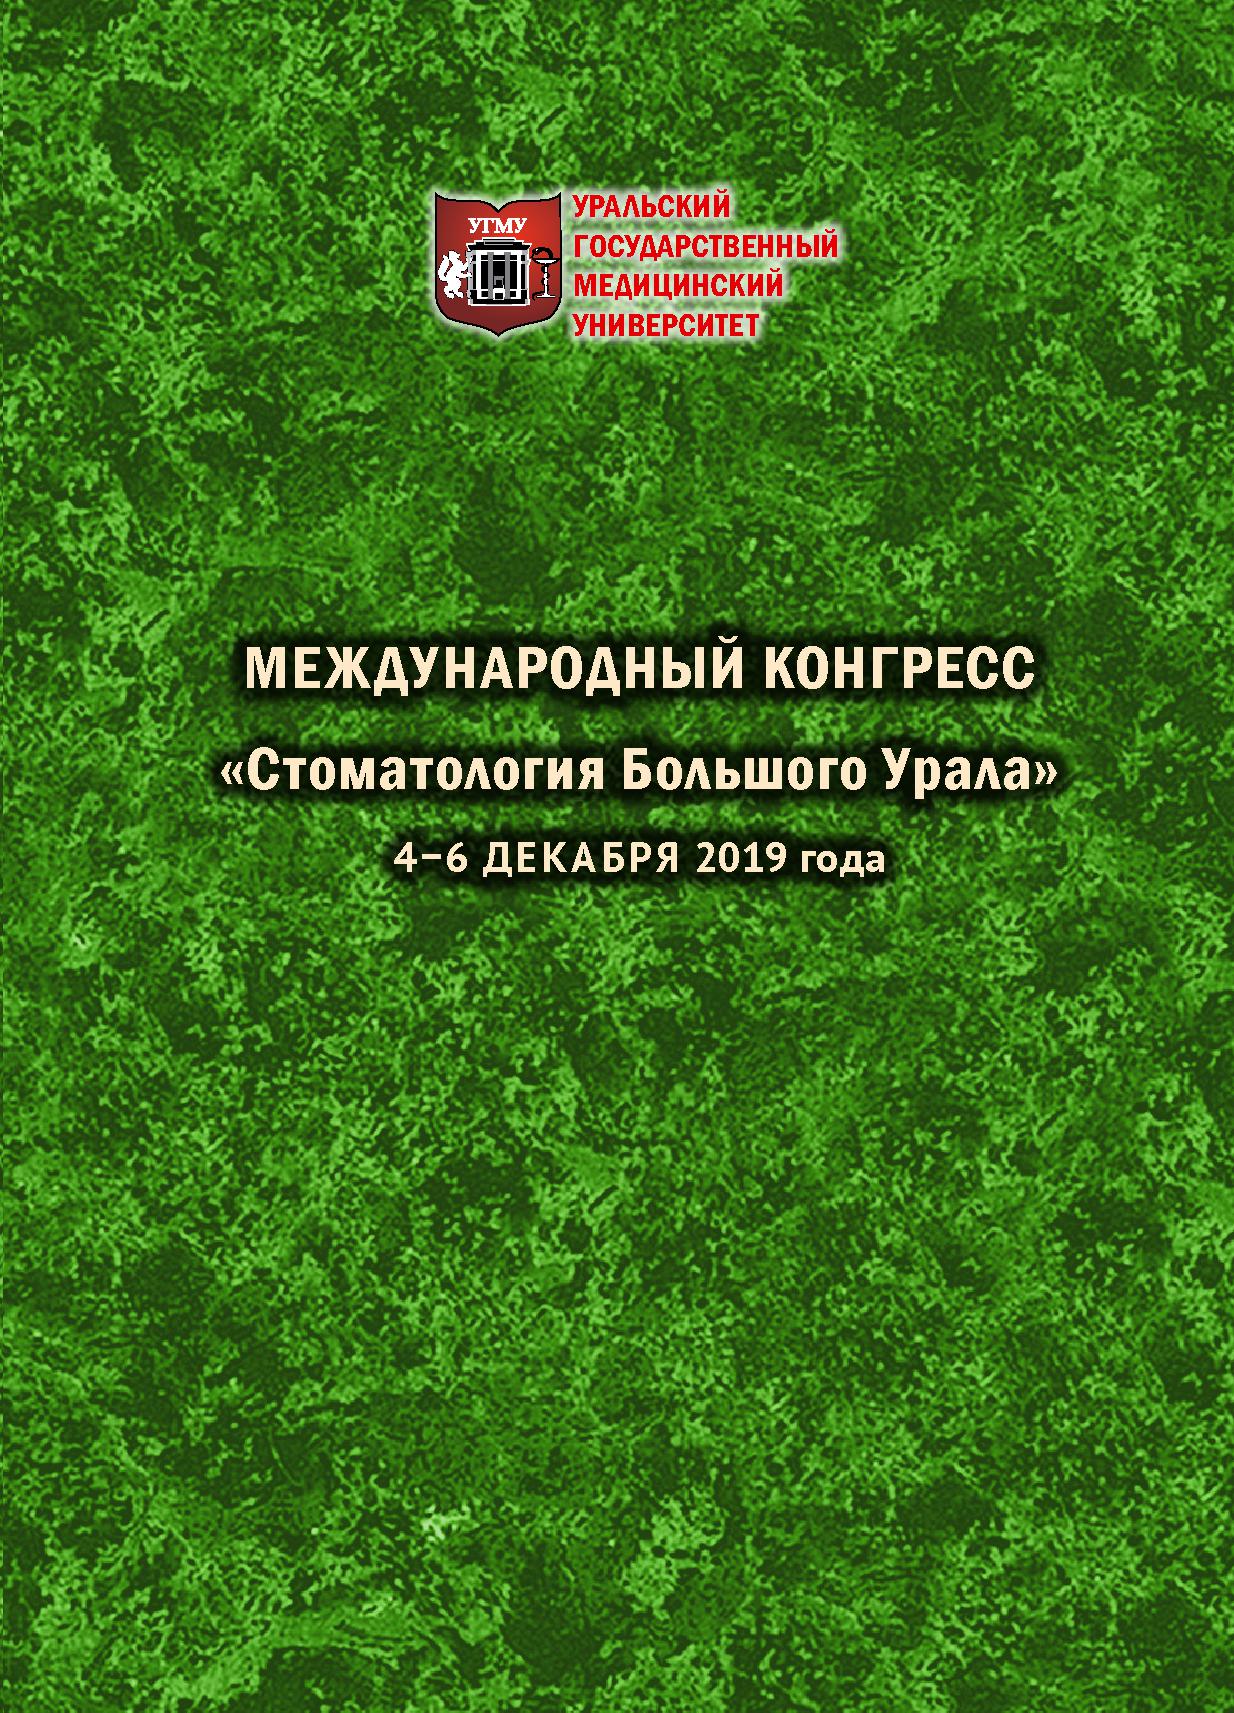             Материалы Международного конгресса «Стоматология Большого Урала». 4-6 декабря 2019 года
    